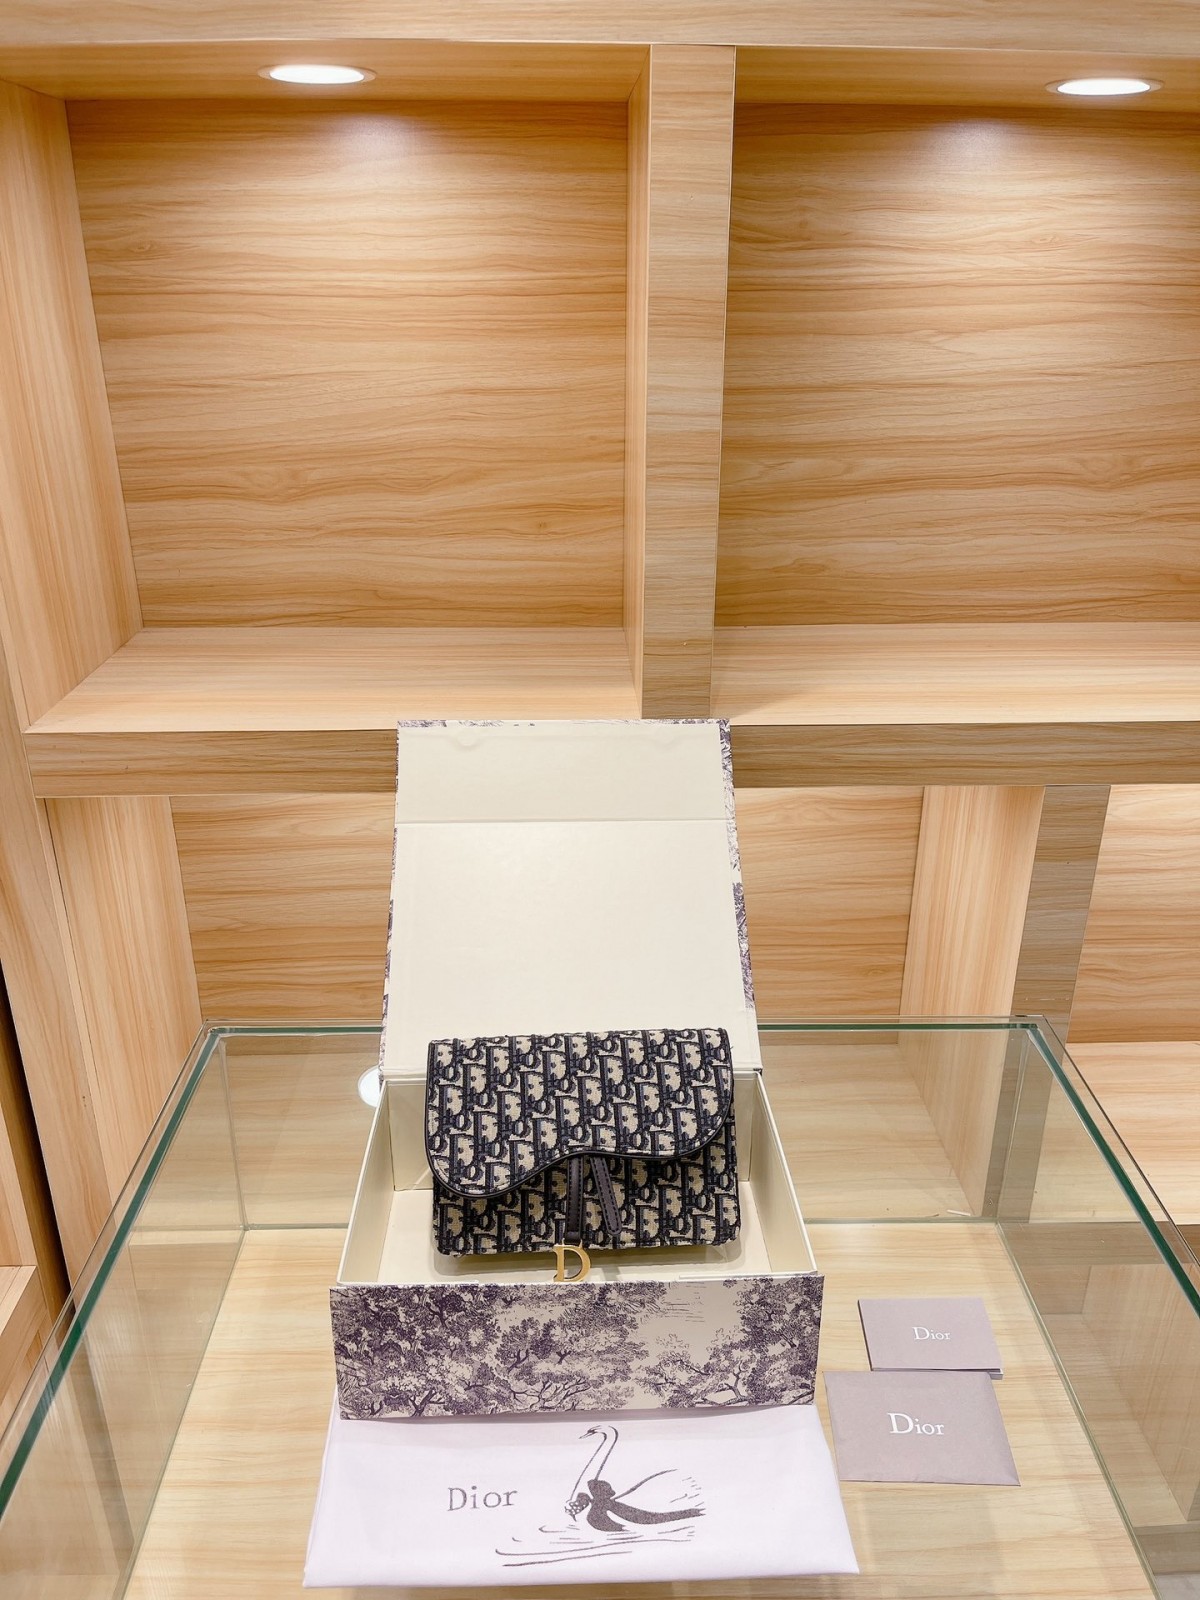 Որտեղ գնել լավ որակի և էժան Dior պայուսակներ (թարմացված 2022 թ.) - Լավագույն որակի կեղծ Louis Vuitton պայուսակների առցանց խանութ, Replica designer bag ru